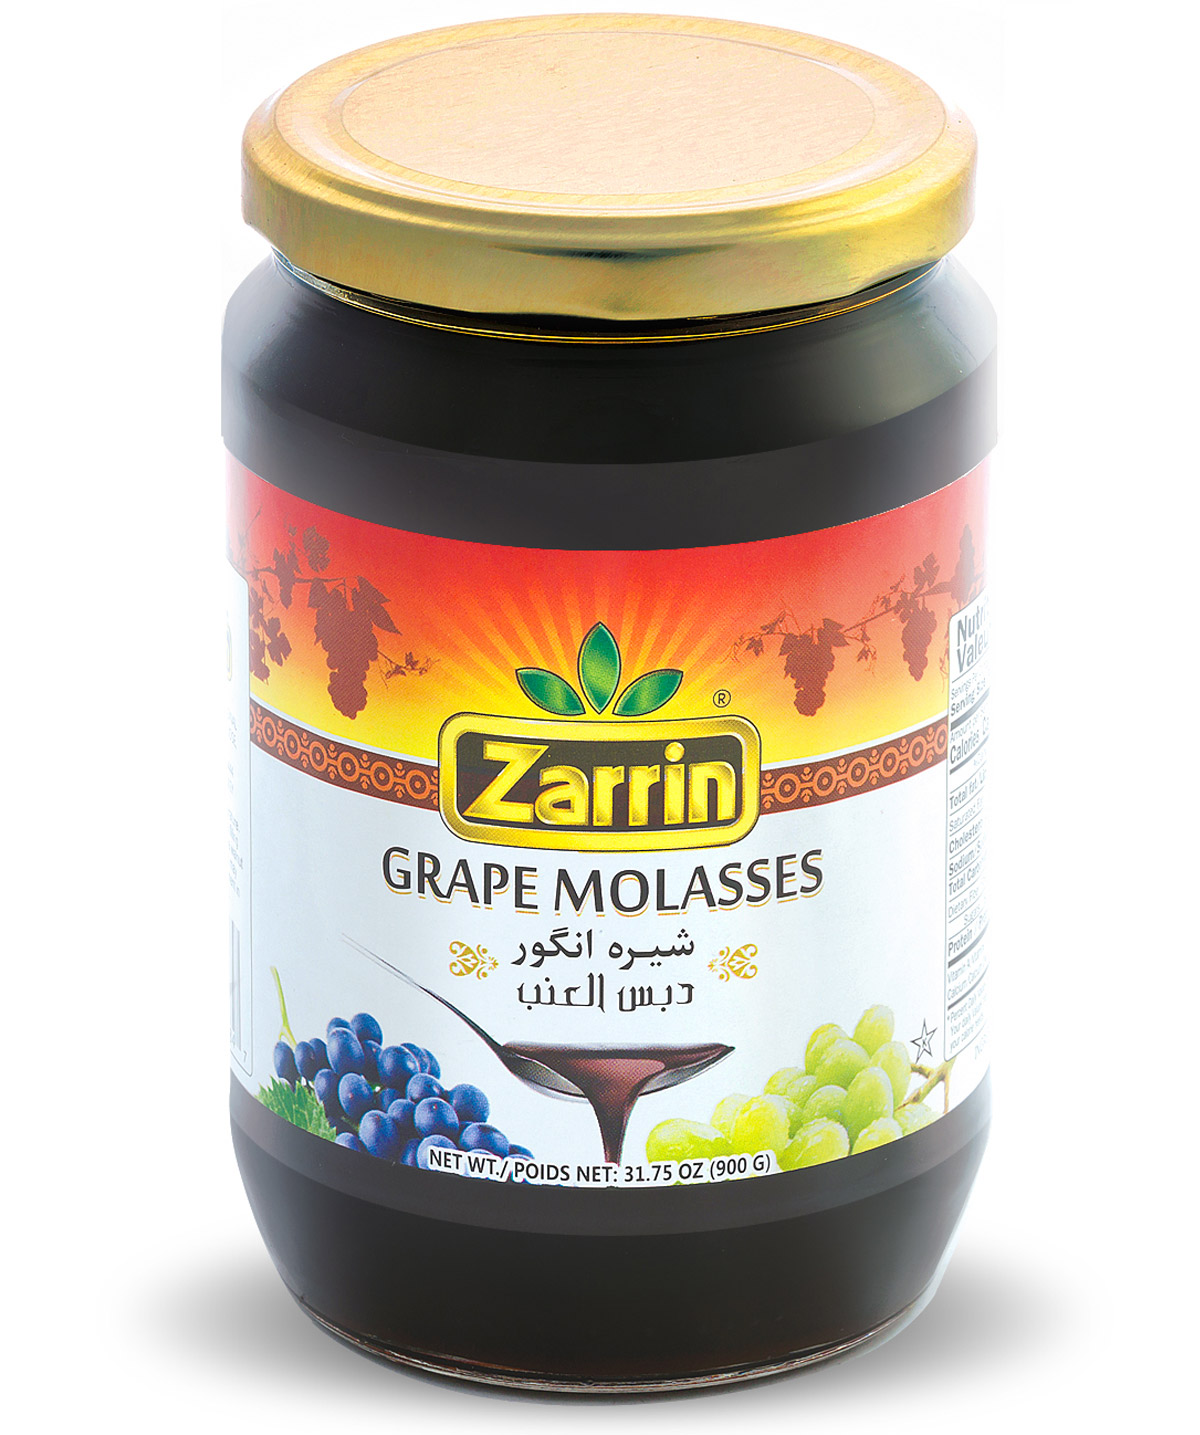 Grape Molasses in Glass Jar